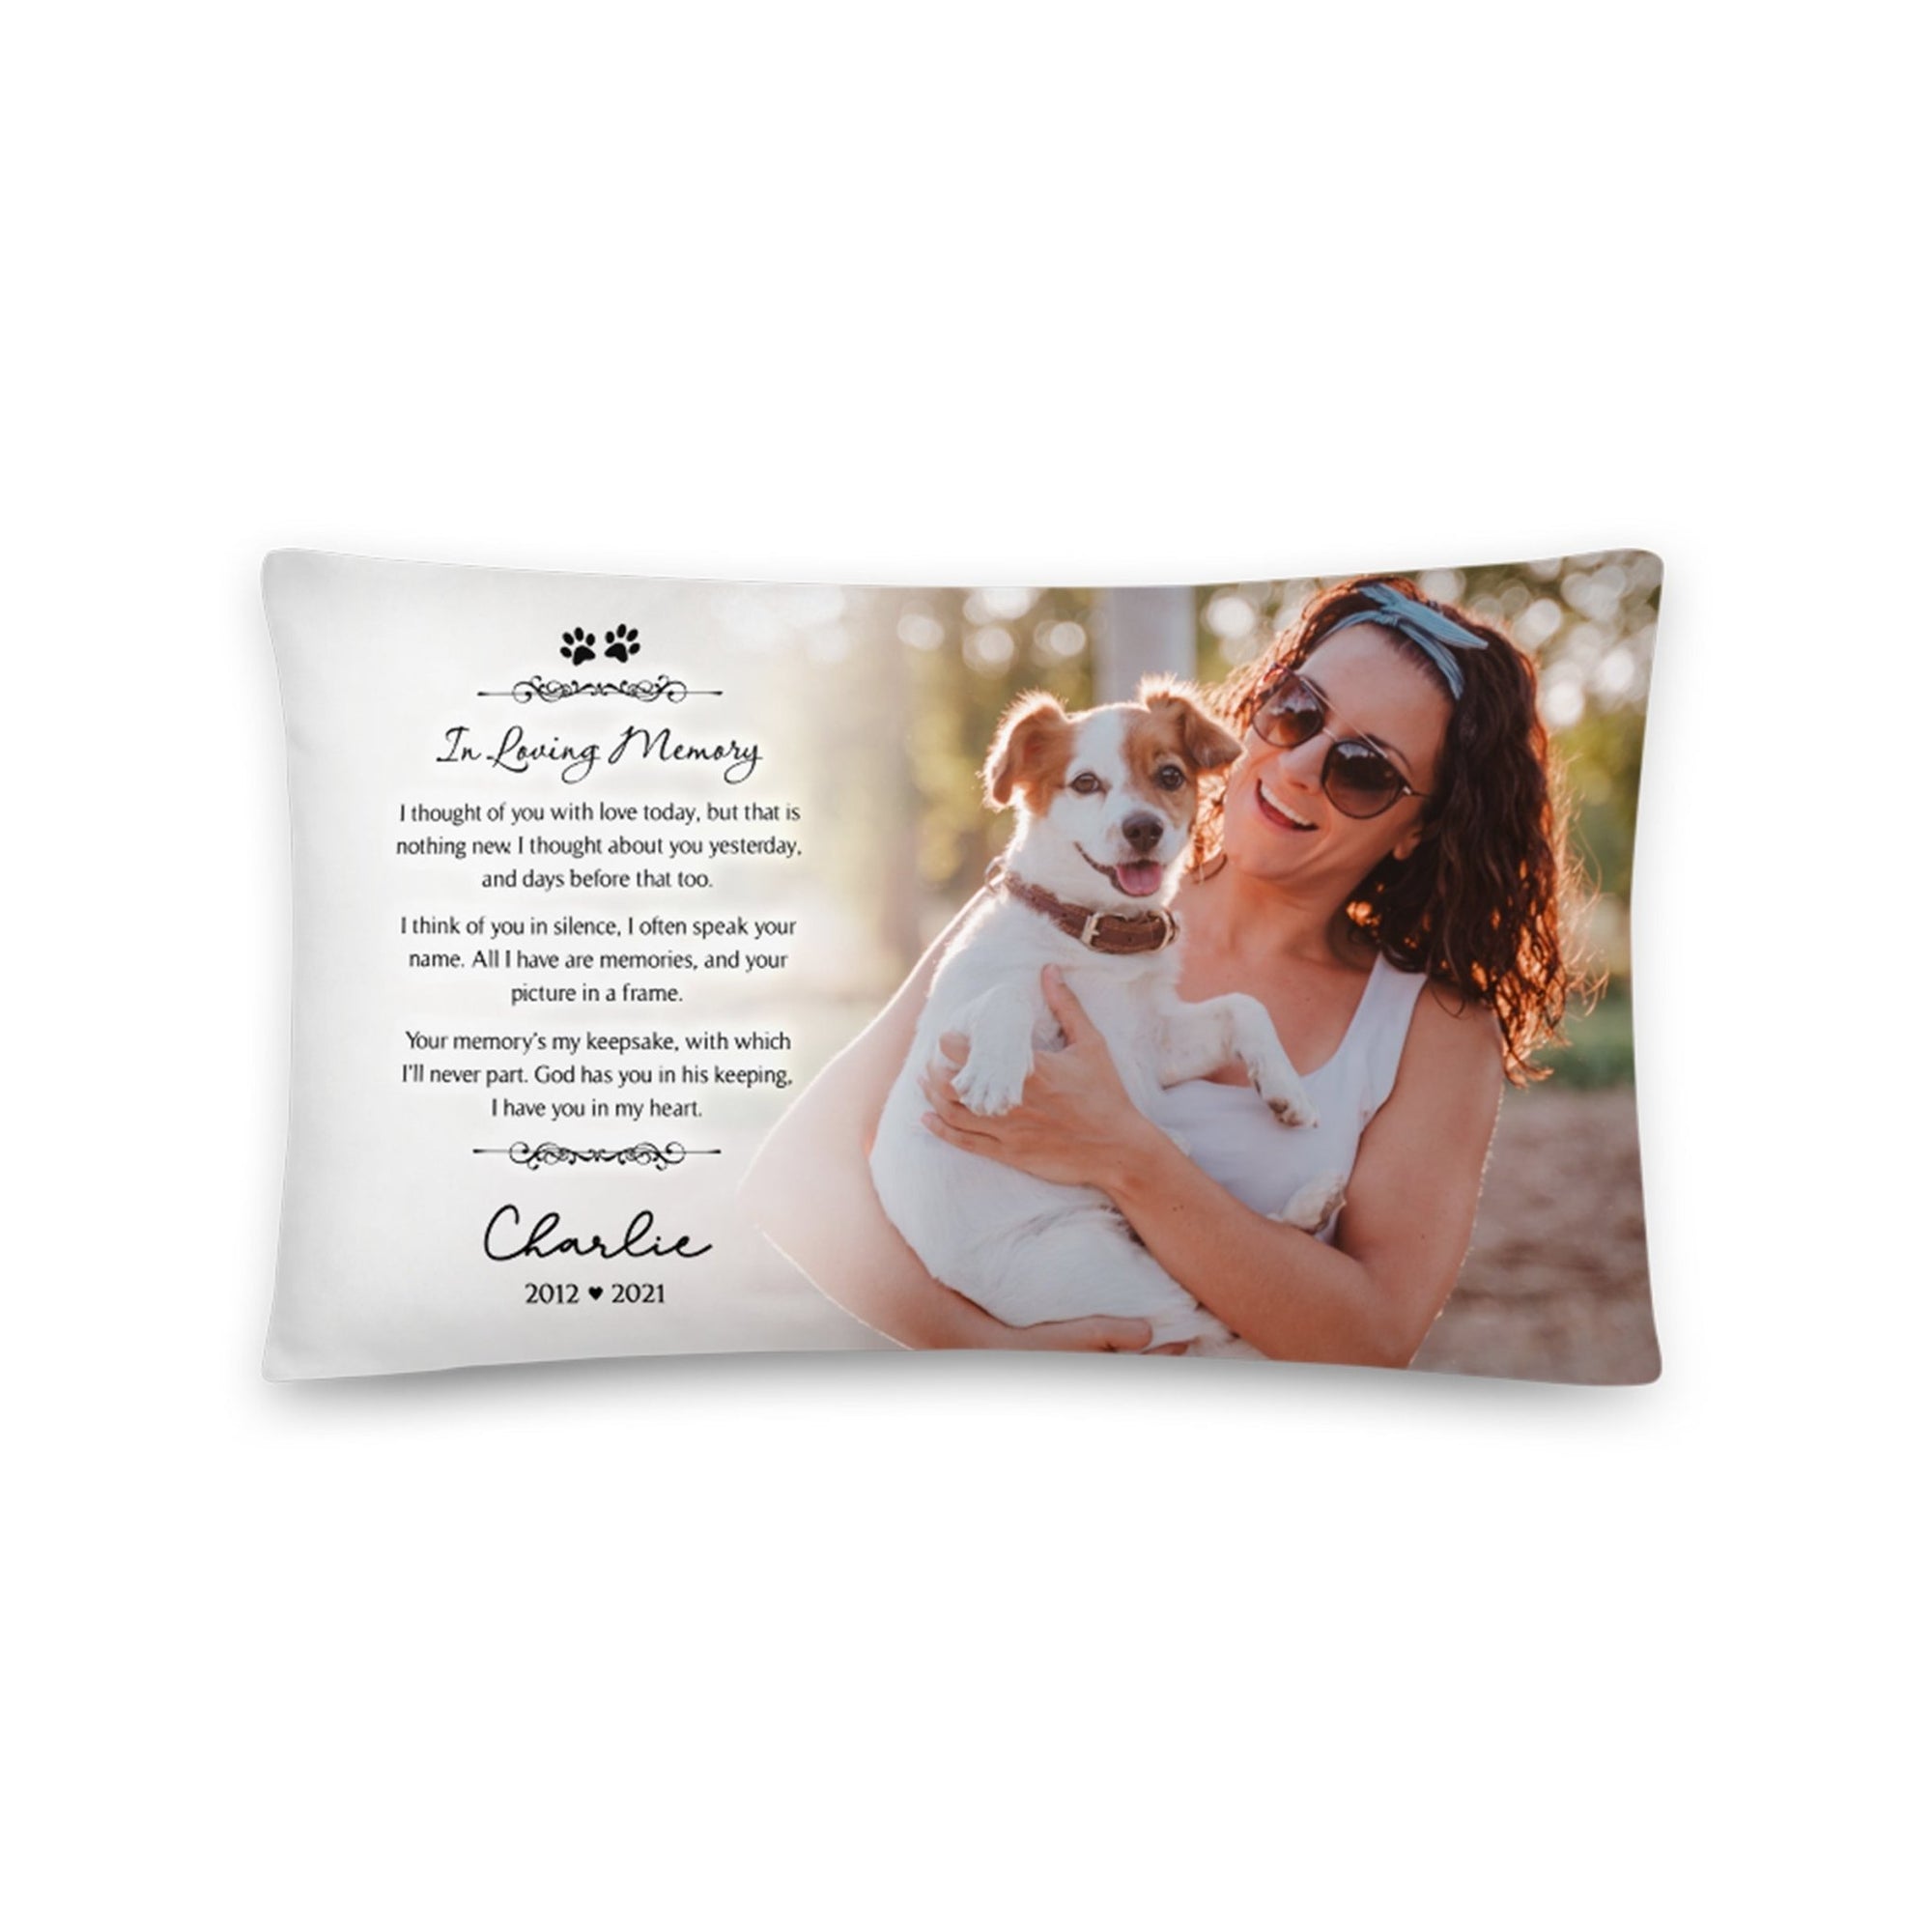 Personalized Pet Memorial Printed Throw Pillow - In Loving Memory - LifeSong Milestones